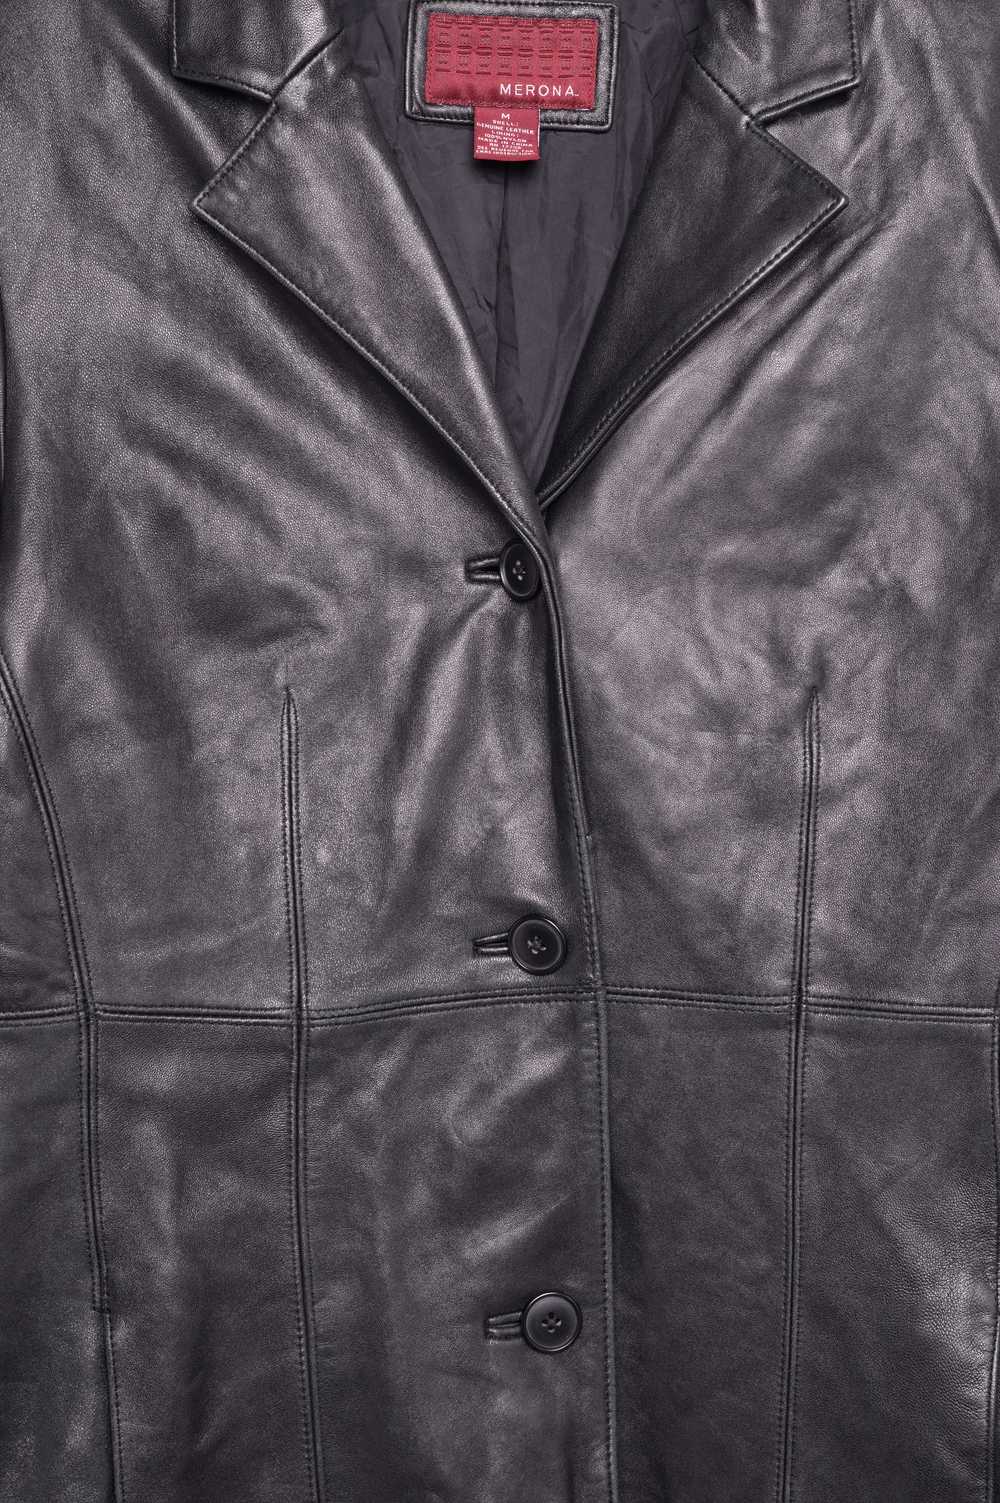 1990s Soft Long Leather Jacket - image 3